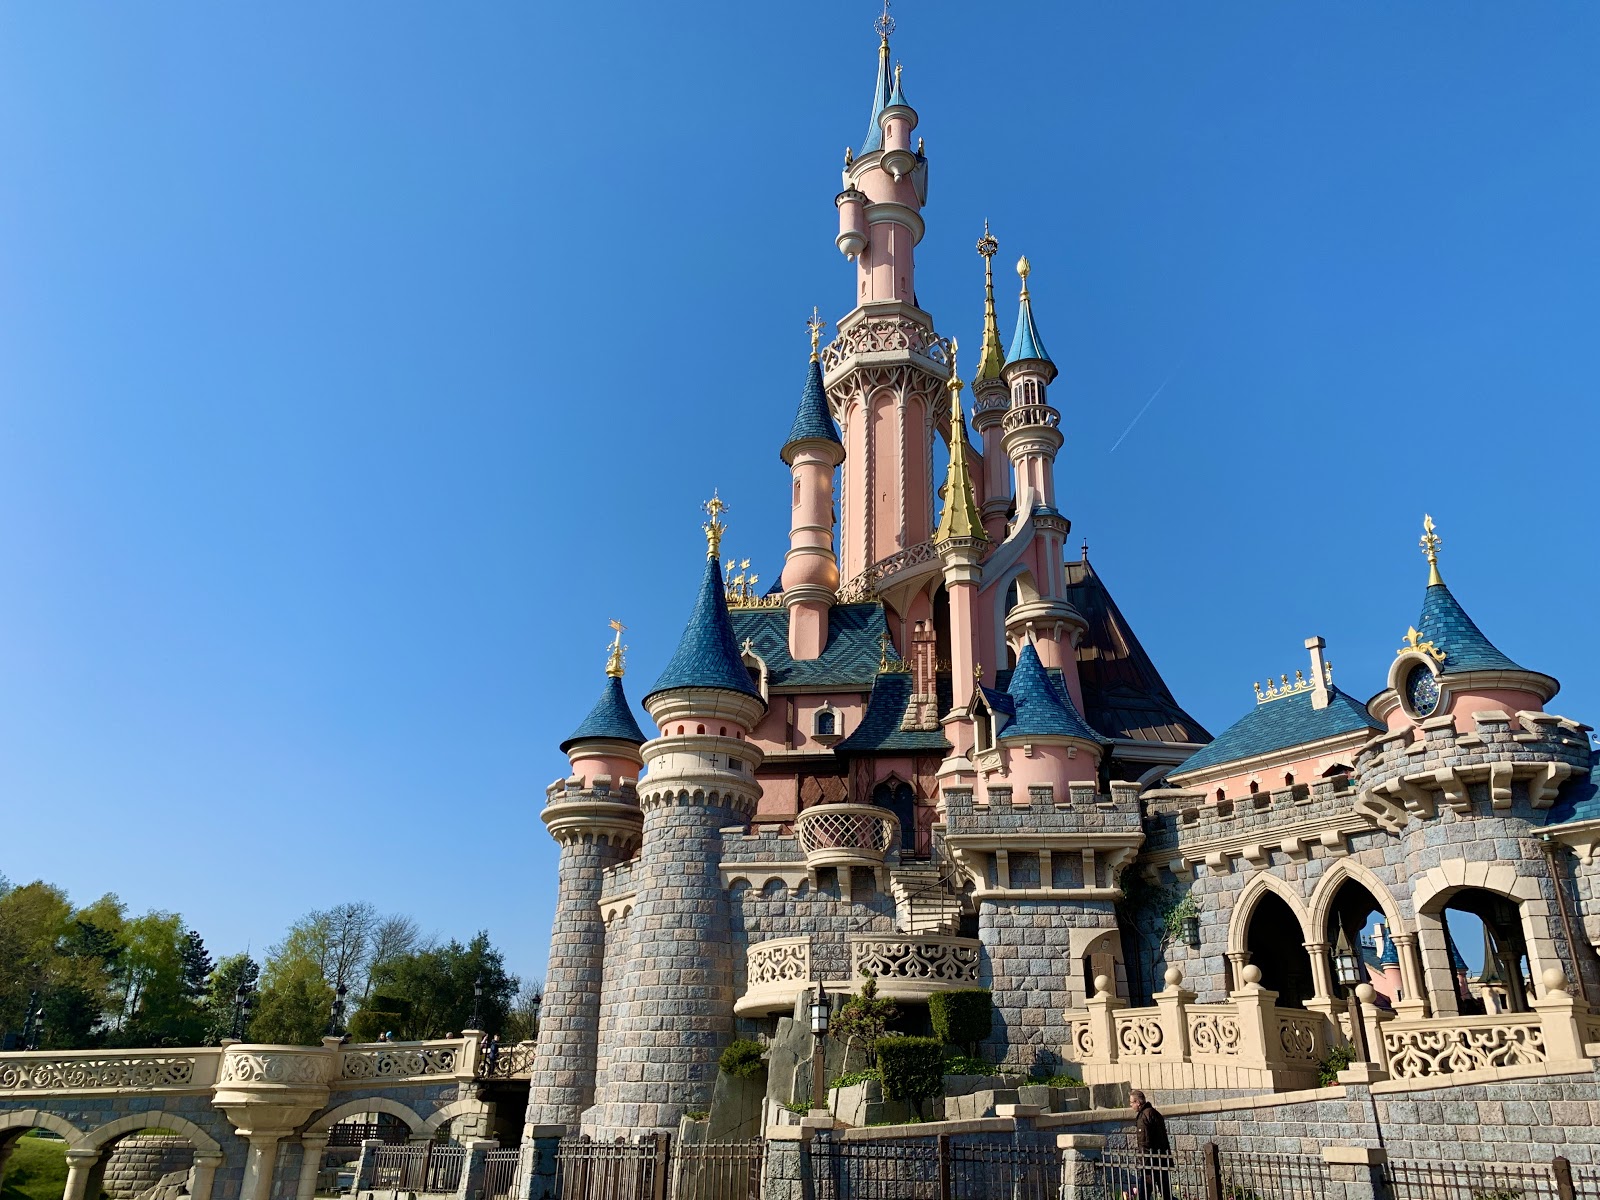 The Disneyland Paris Castle, Le Château de la Belle au Bois Dormant